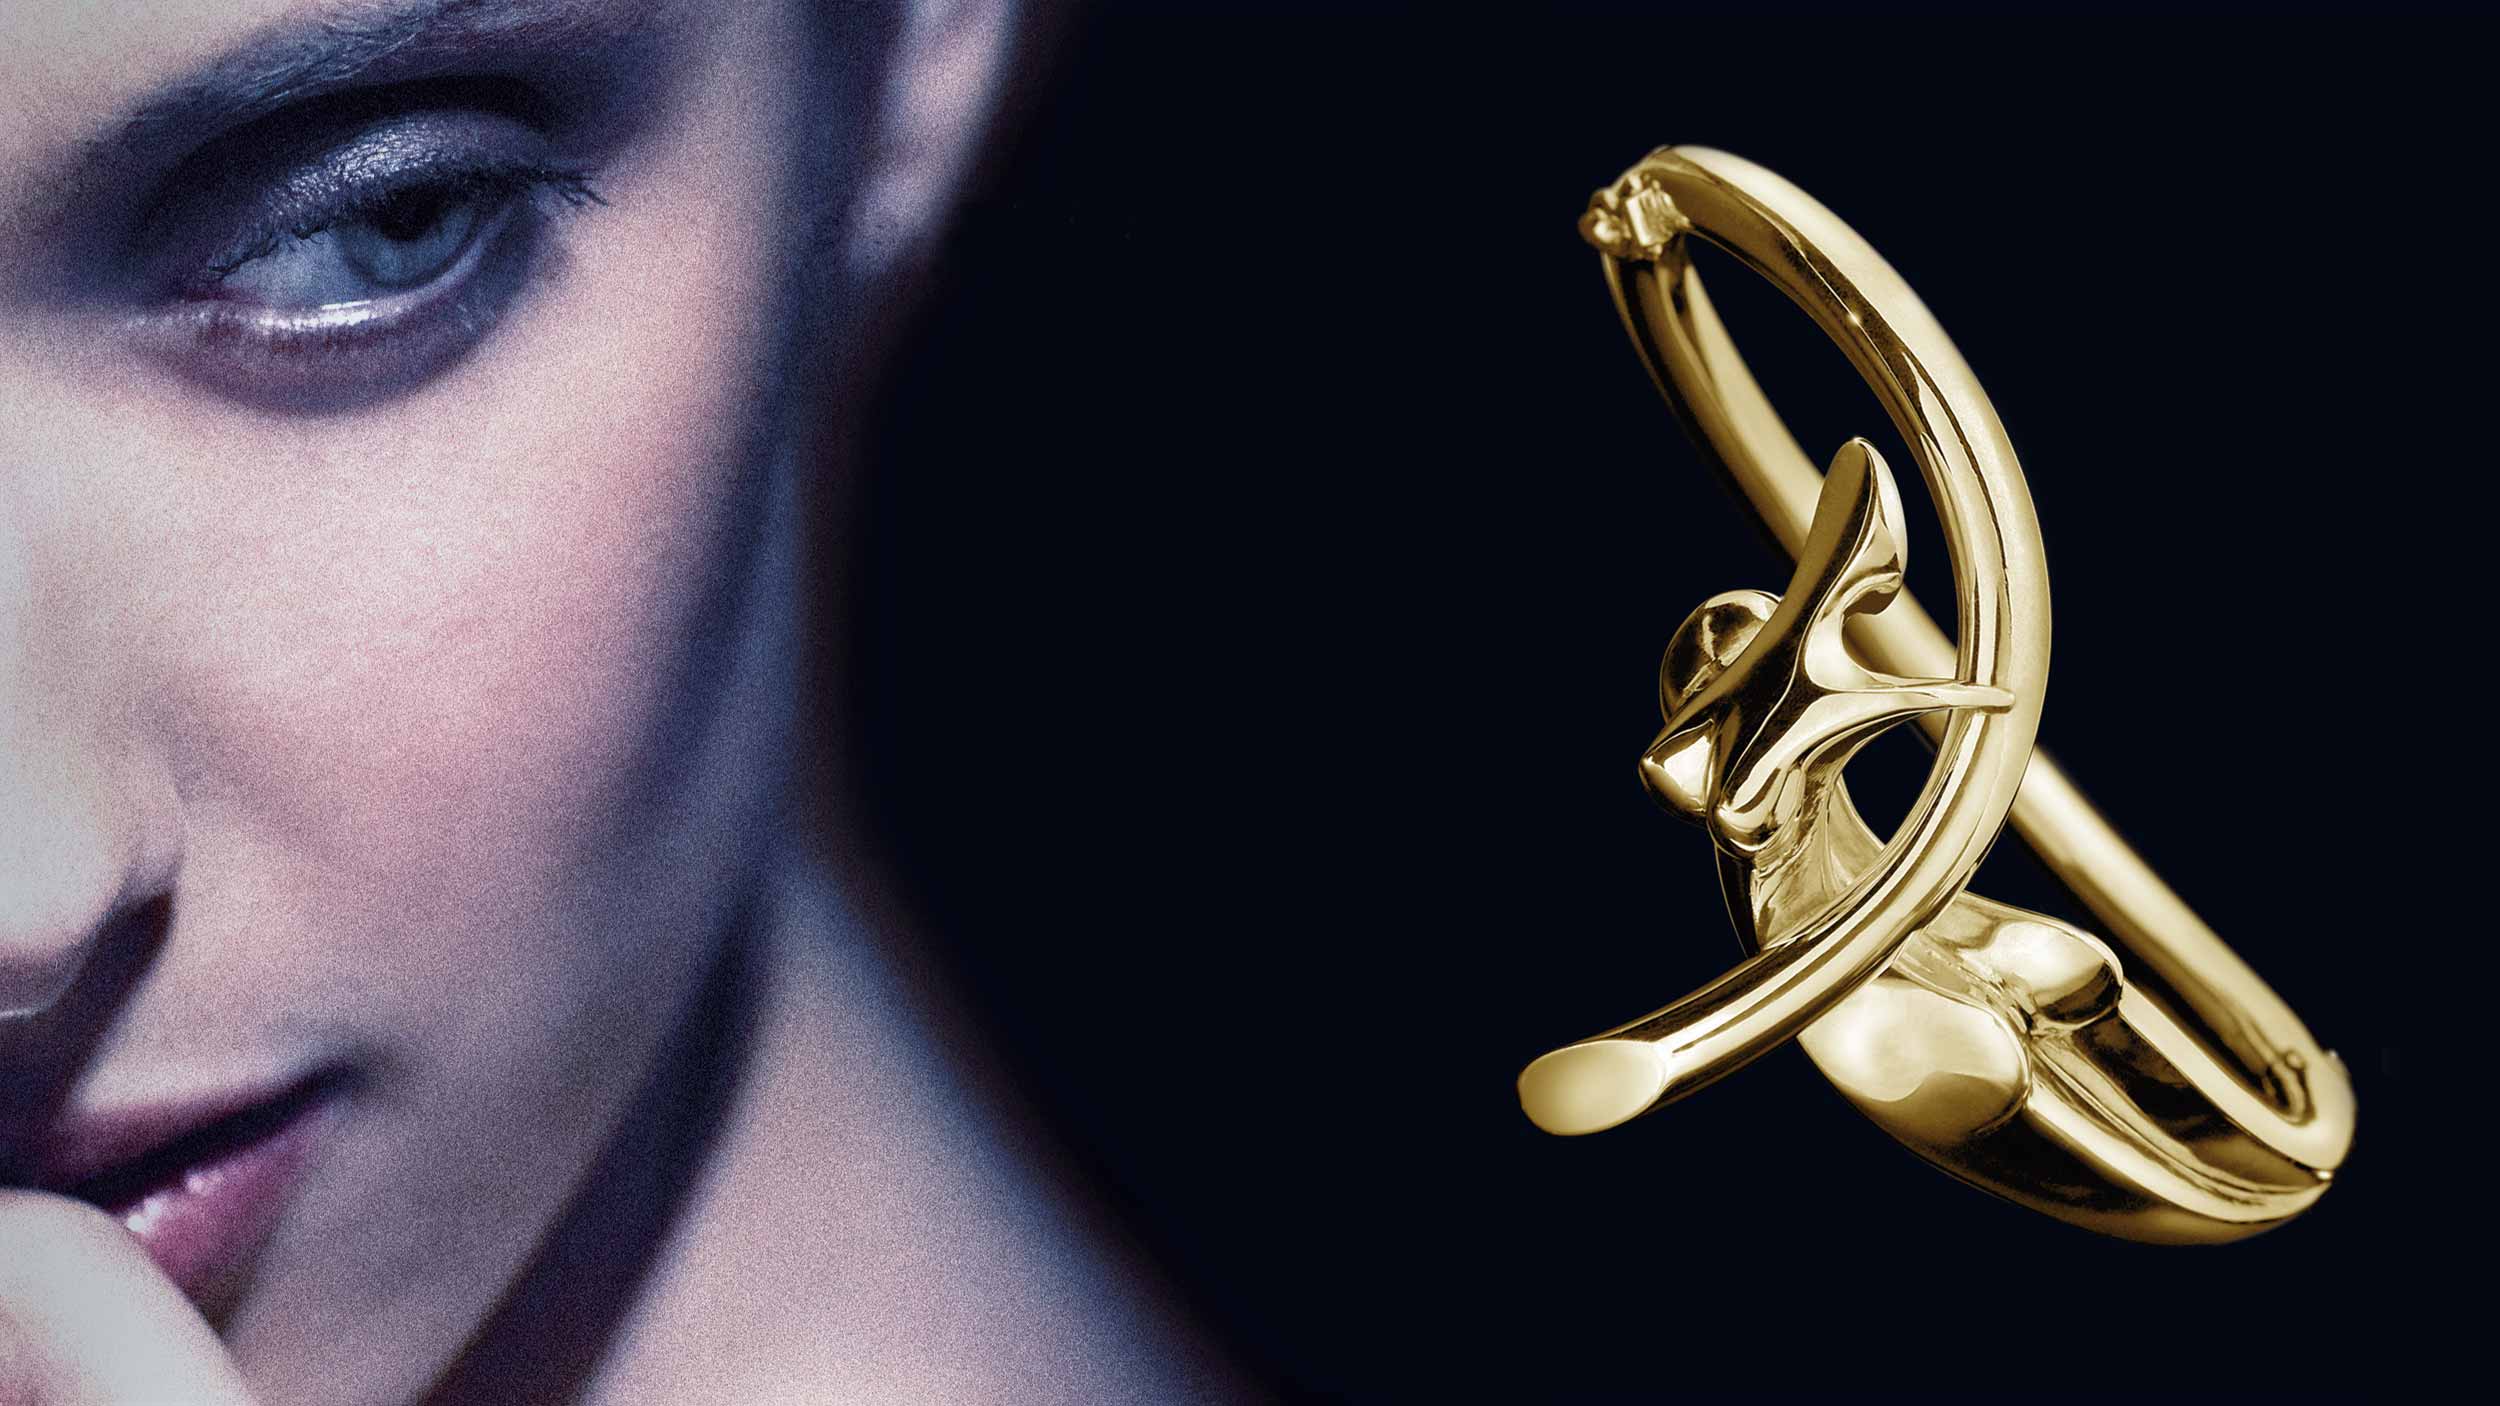 Nina, Bracelet 18 - carat gold, signed by the artist Marion Bürklé